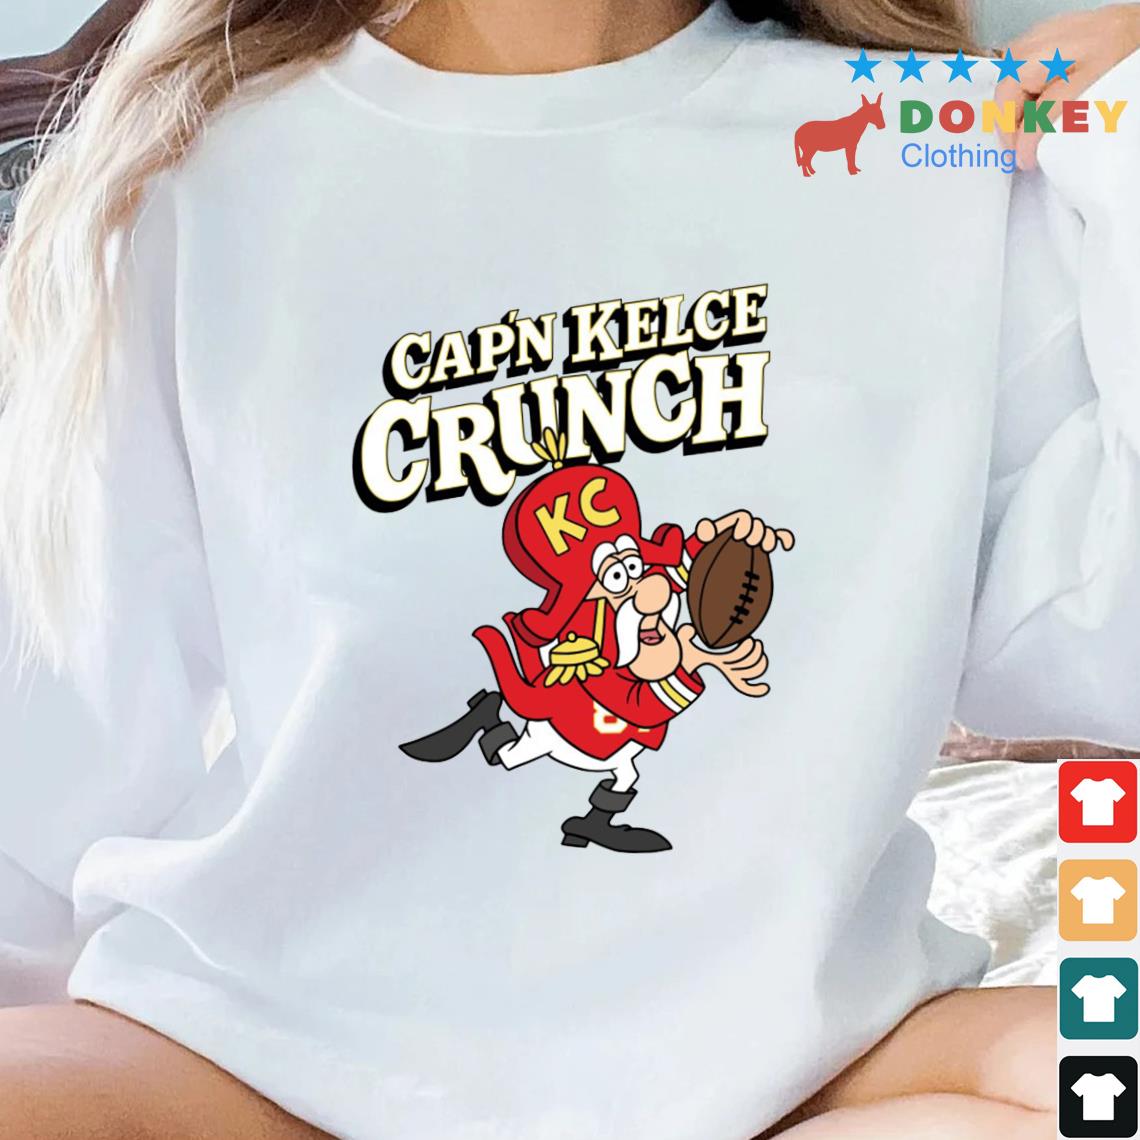 Cap'n Kelce Crunch Kansas City Chiefs Cereal Shirt